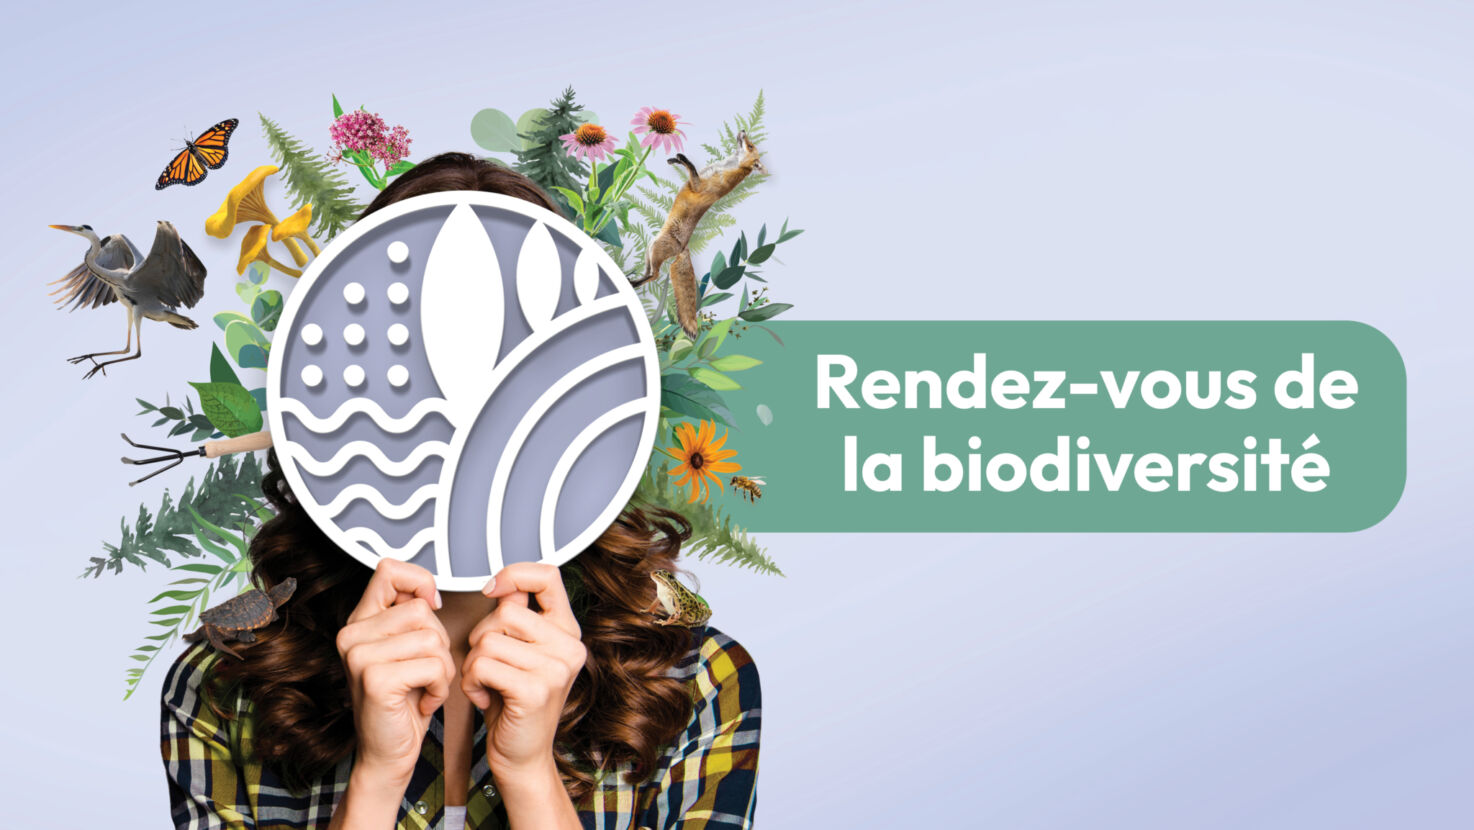 Saint-Sauveur/Rendez-vous de la biodiversité